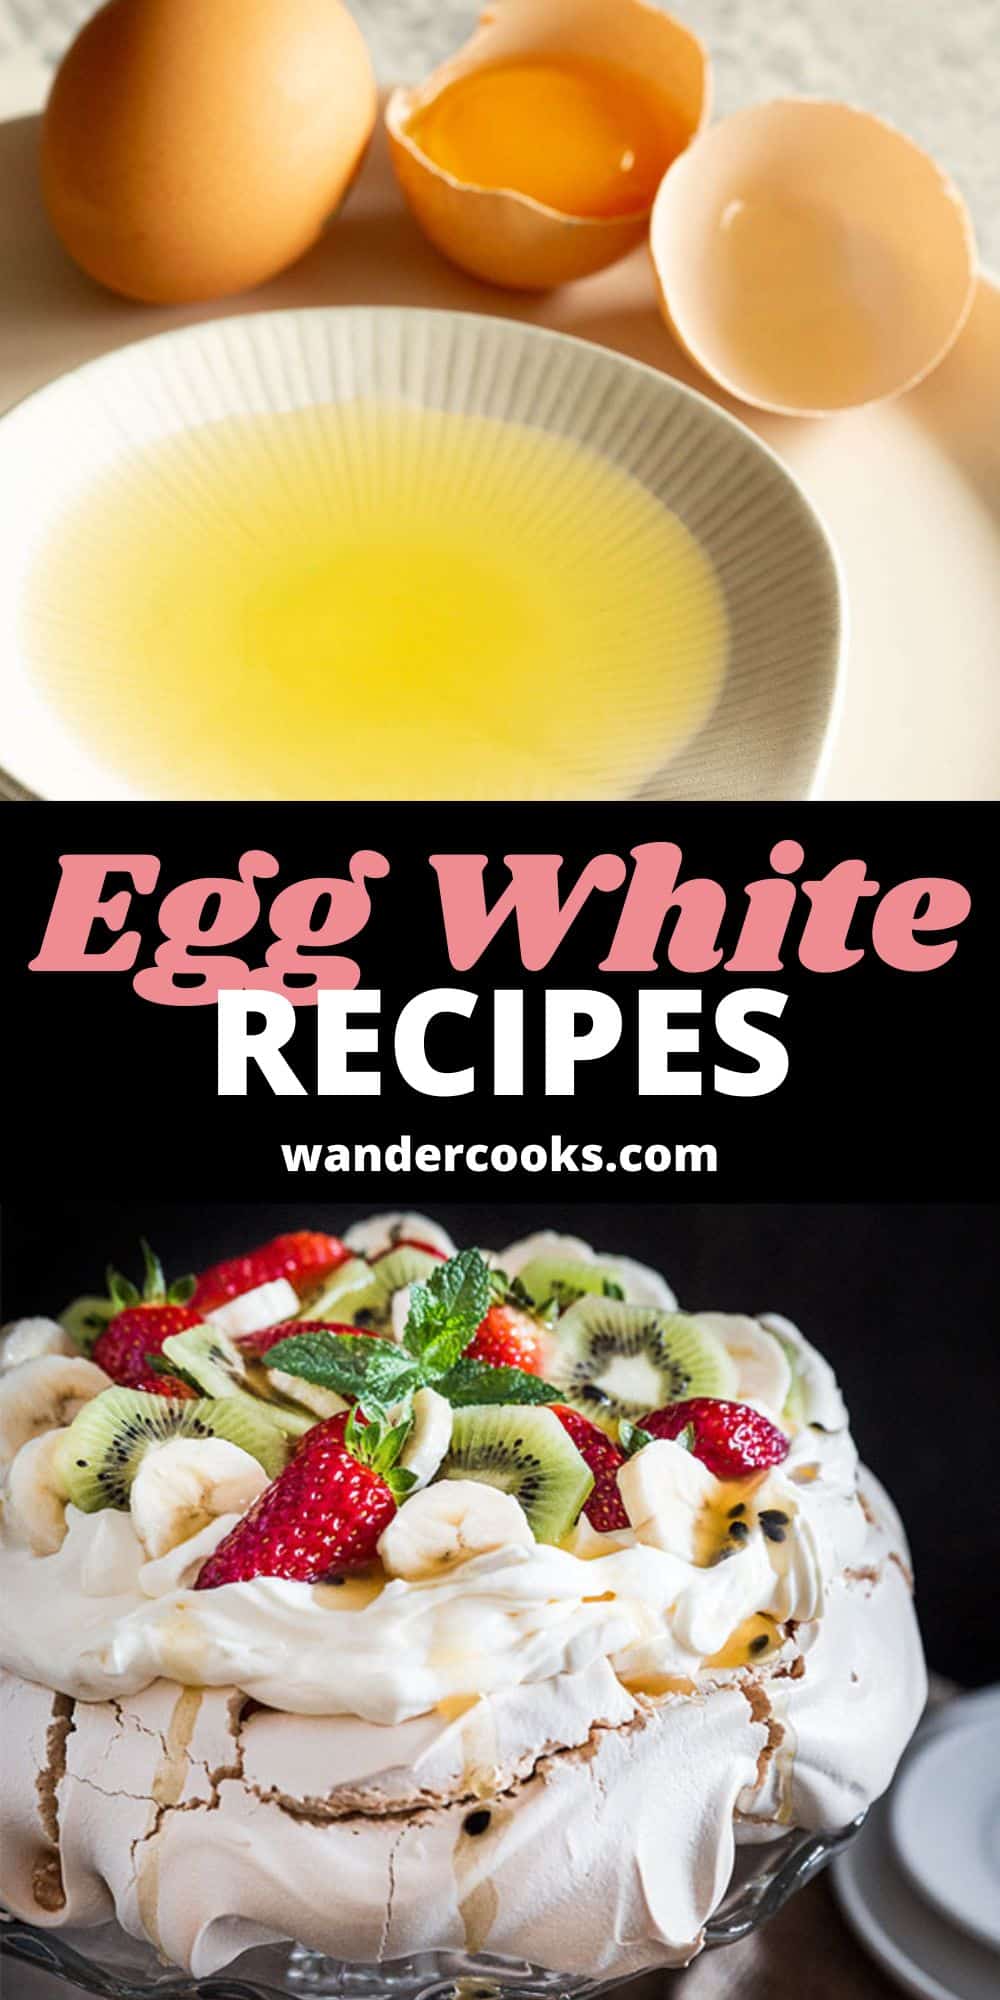 5+ Amazing Egg White Recipes to Use Up Leftover Egg Whites